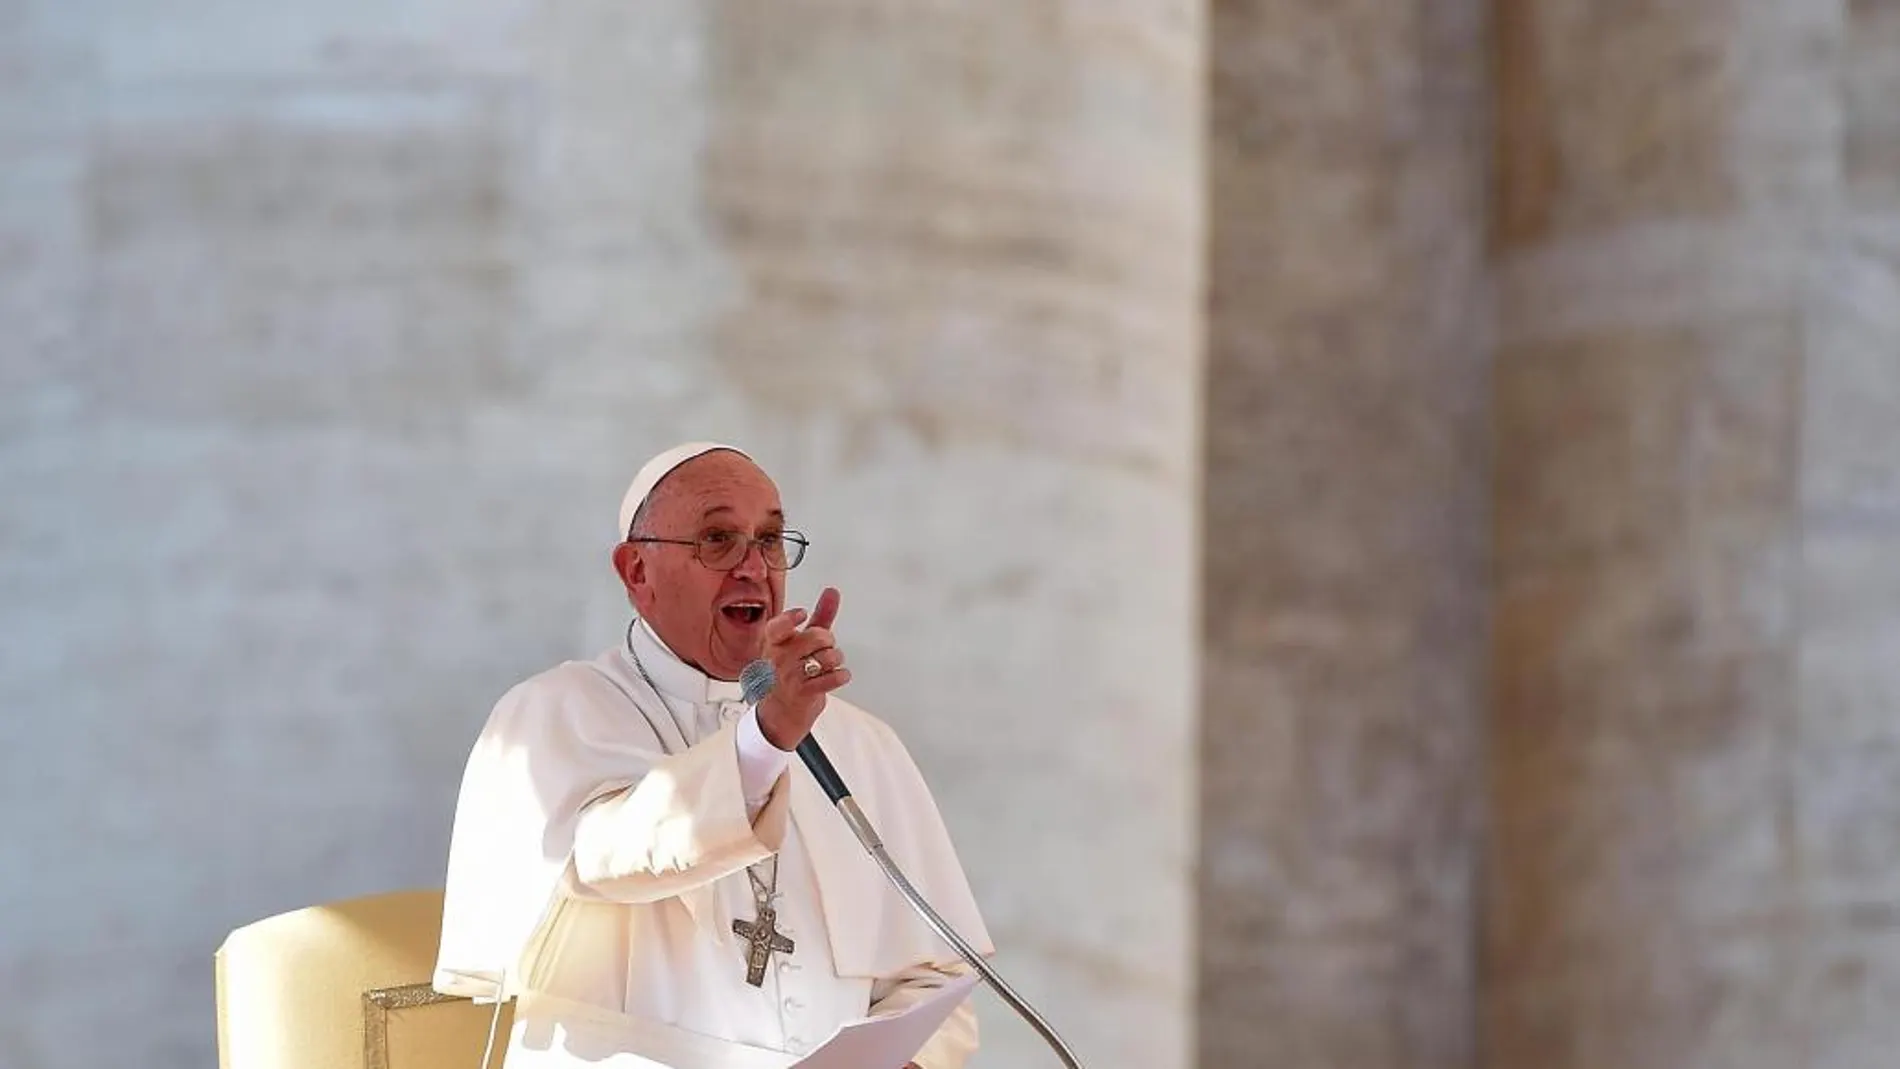 El Papa Francisco ha condenado el acto "deplorable"del robo